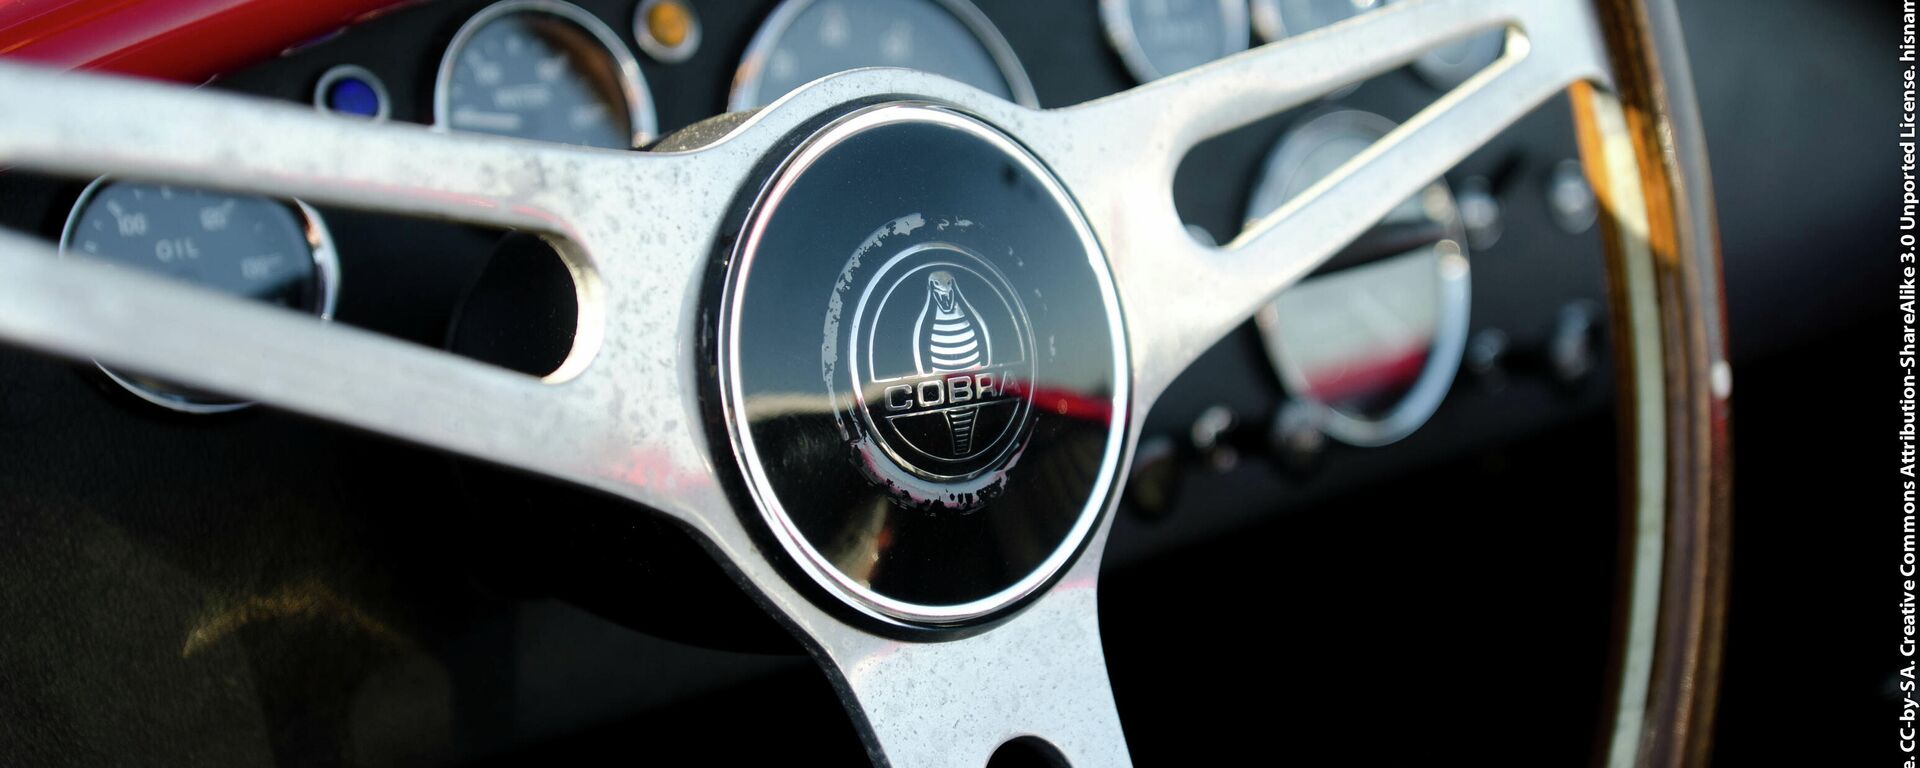 El volante de un Shelby Cobra (foto referencial) - Sputnik Mundo, 1920, 04.03.2021